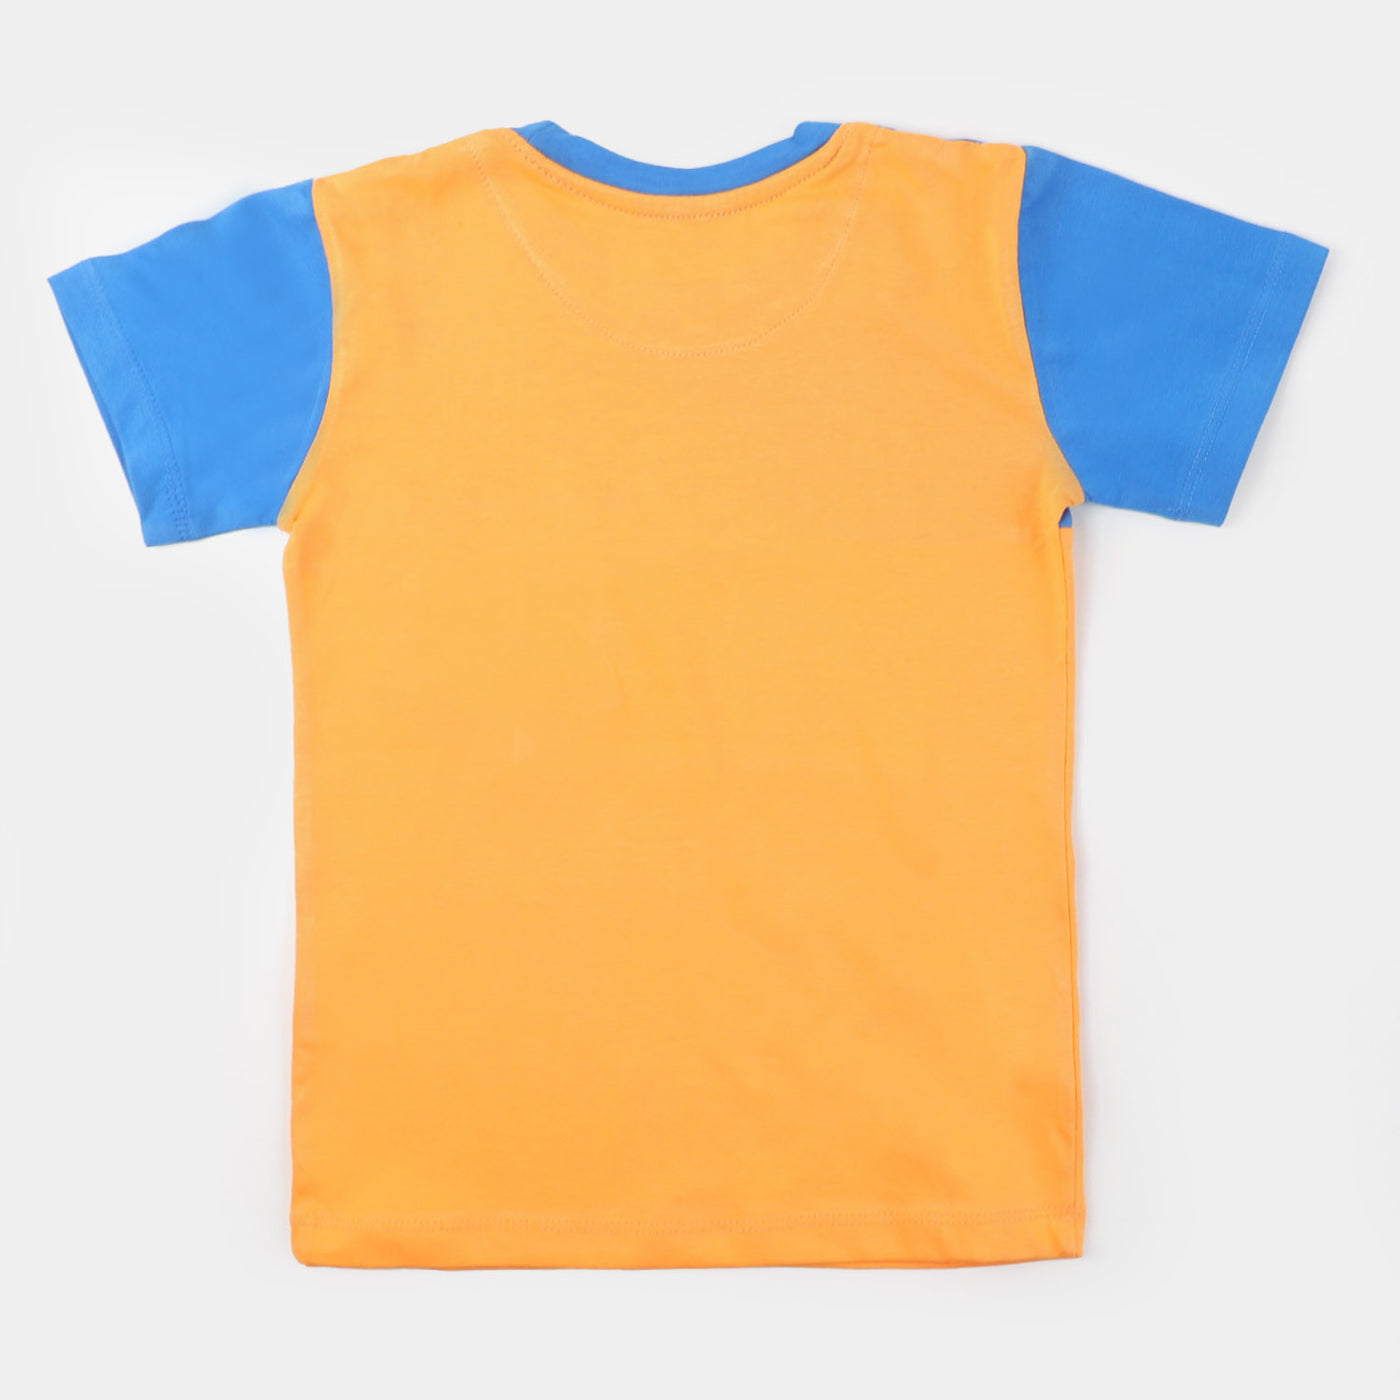 Boys Cotton T-Shirt Color Block - Orange/Blue